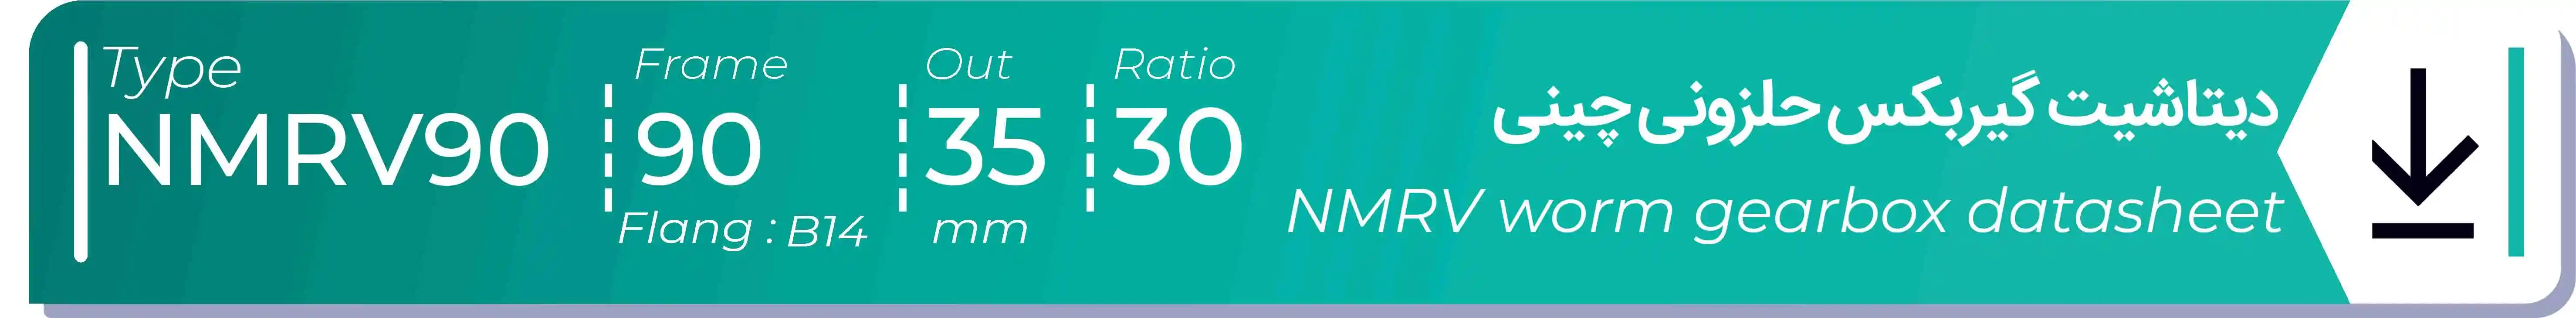  دیتاشیت و مشخصات فنی گیربکس حلزونی چینی   NMRV90  -  با خروجی 35- میلی متر و نسبت30 و فریم 90